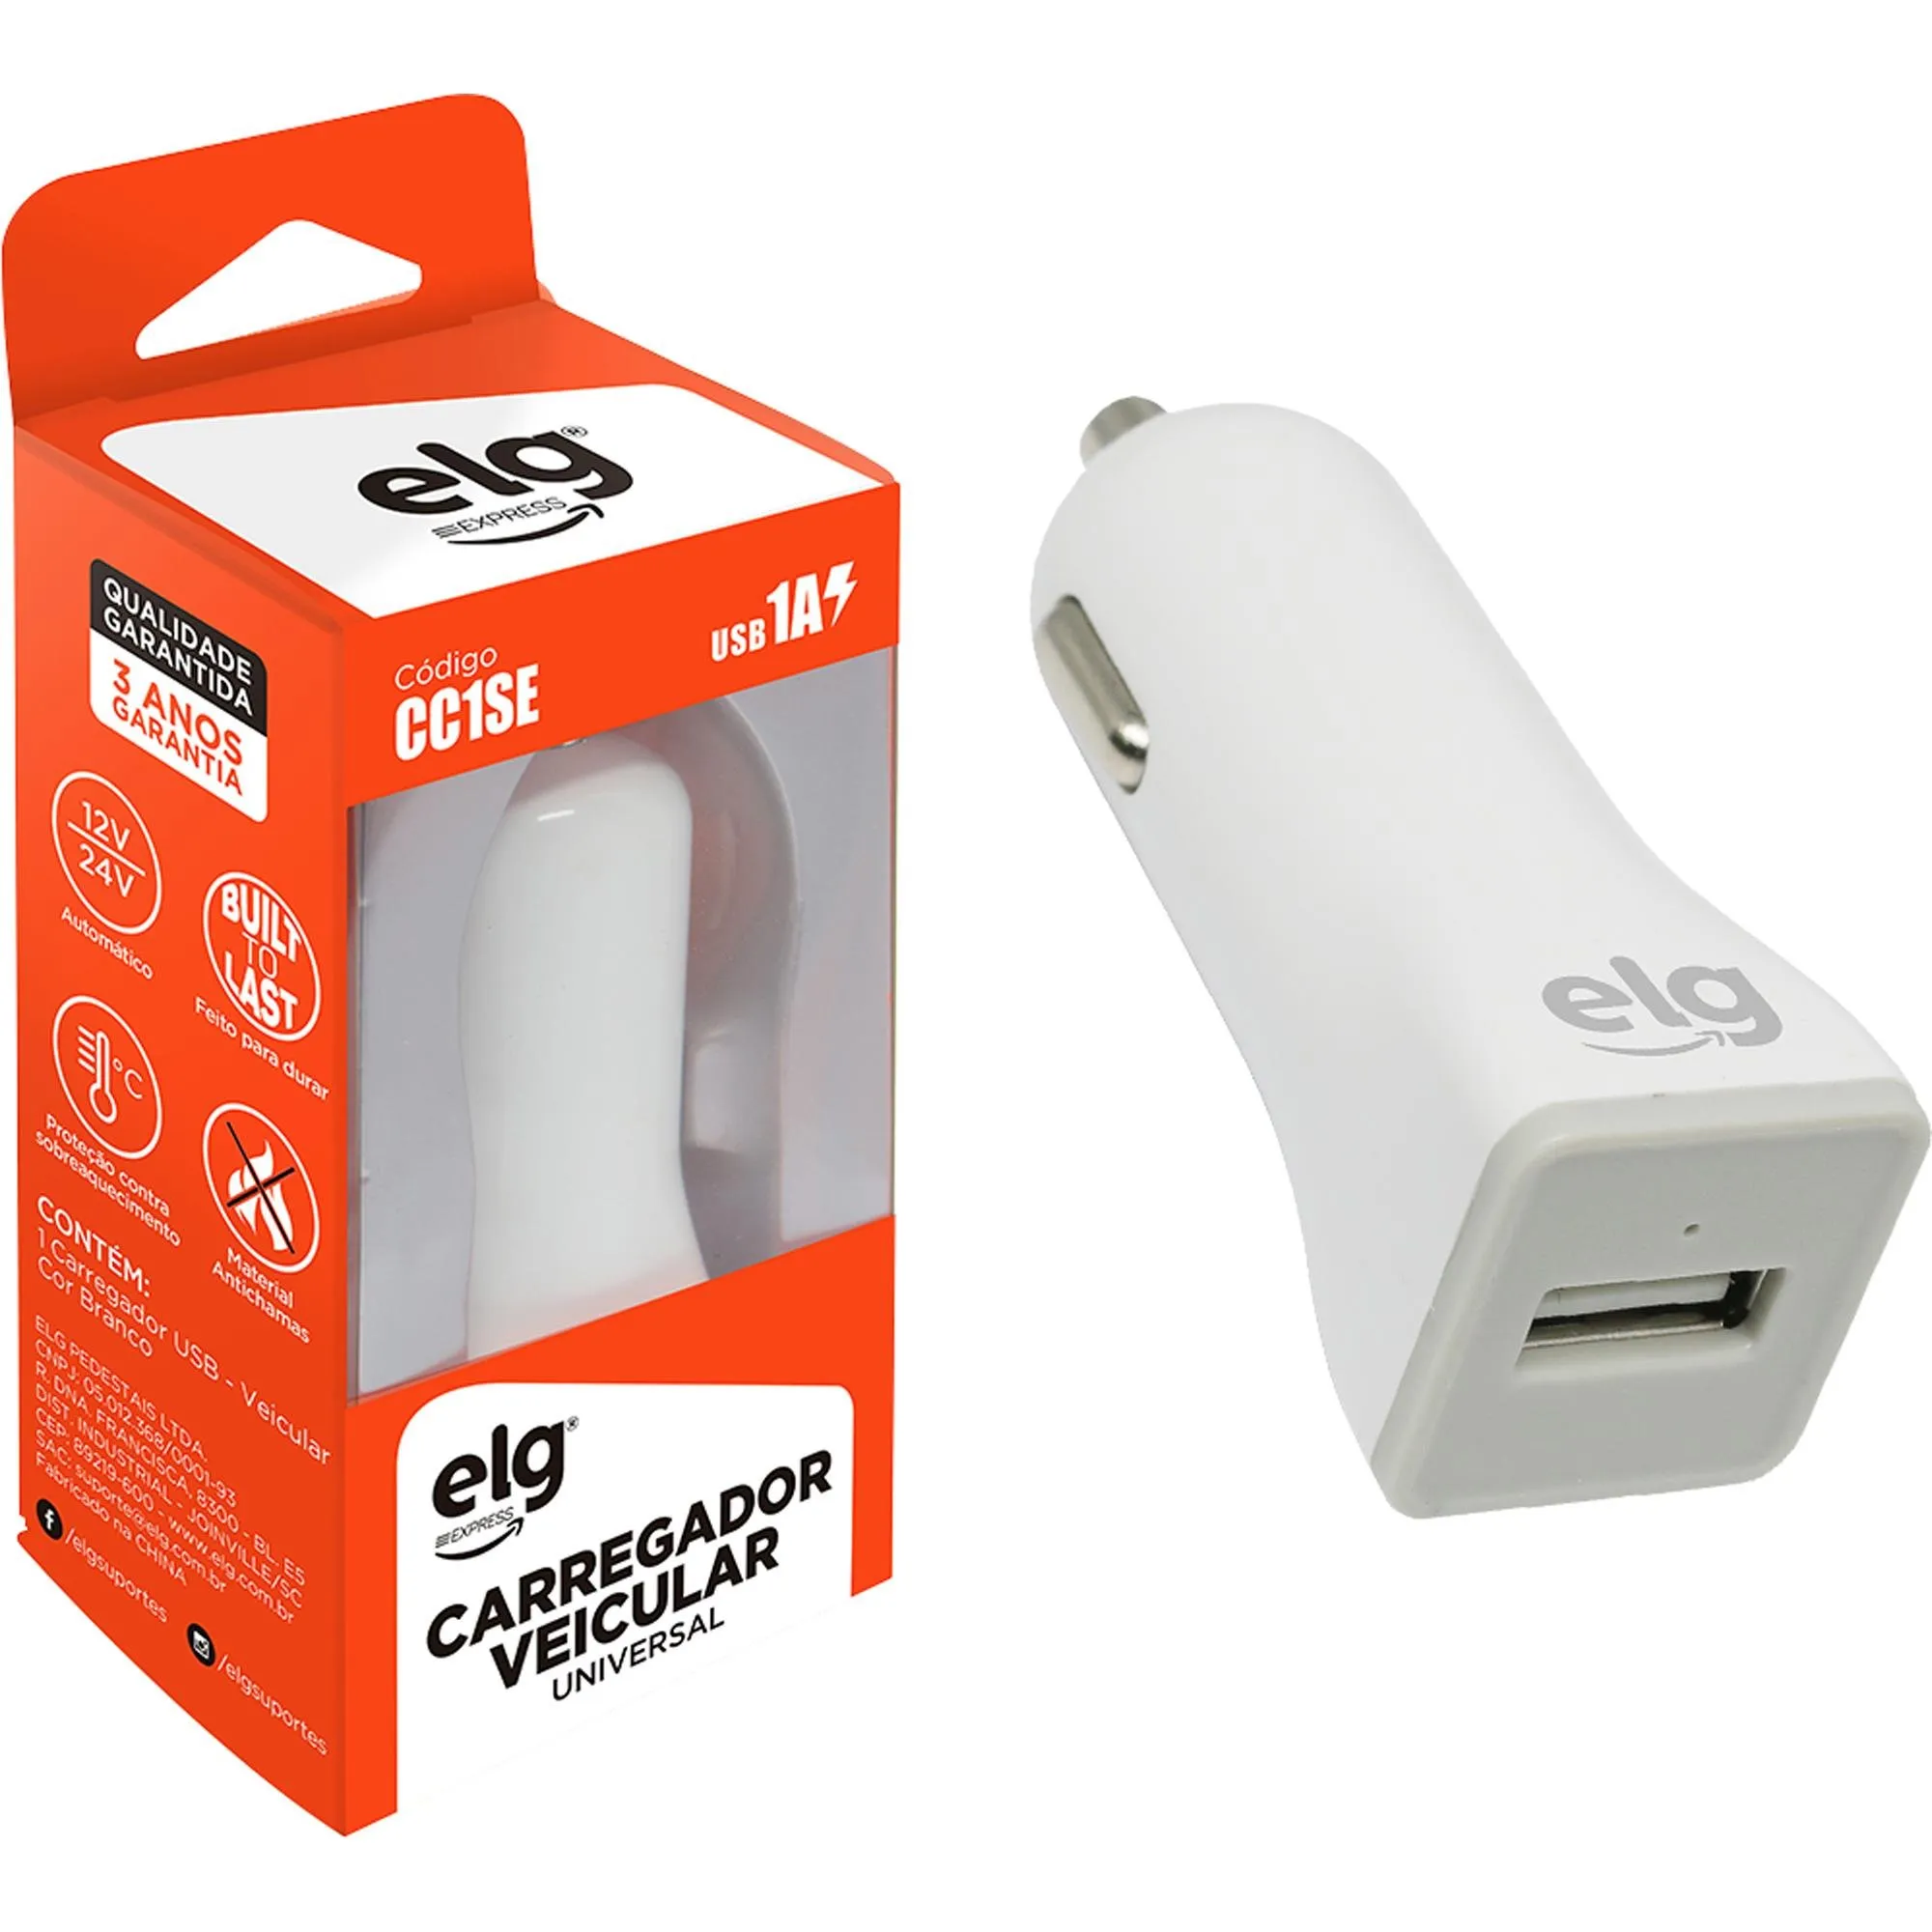 Carregador Veicular Universal USB 1A CC1SE Branco ELG por 21,99 à vista no boleto/pix ou parcele em até 1x sem juros. Compre na loja Mundomax!